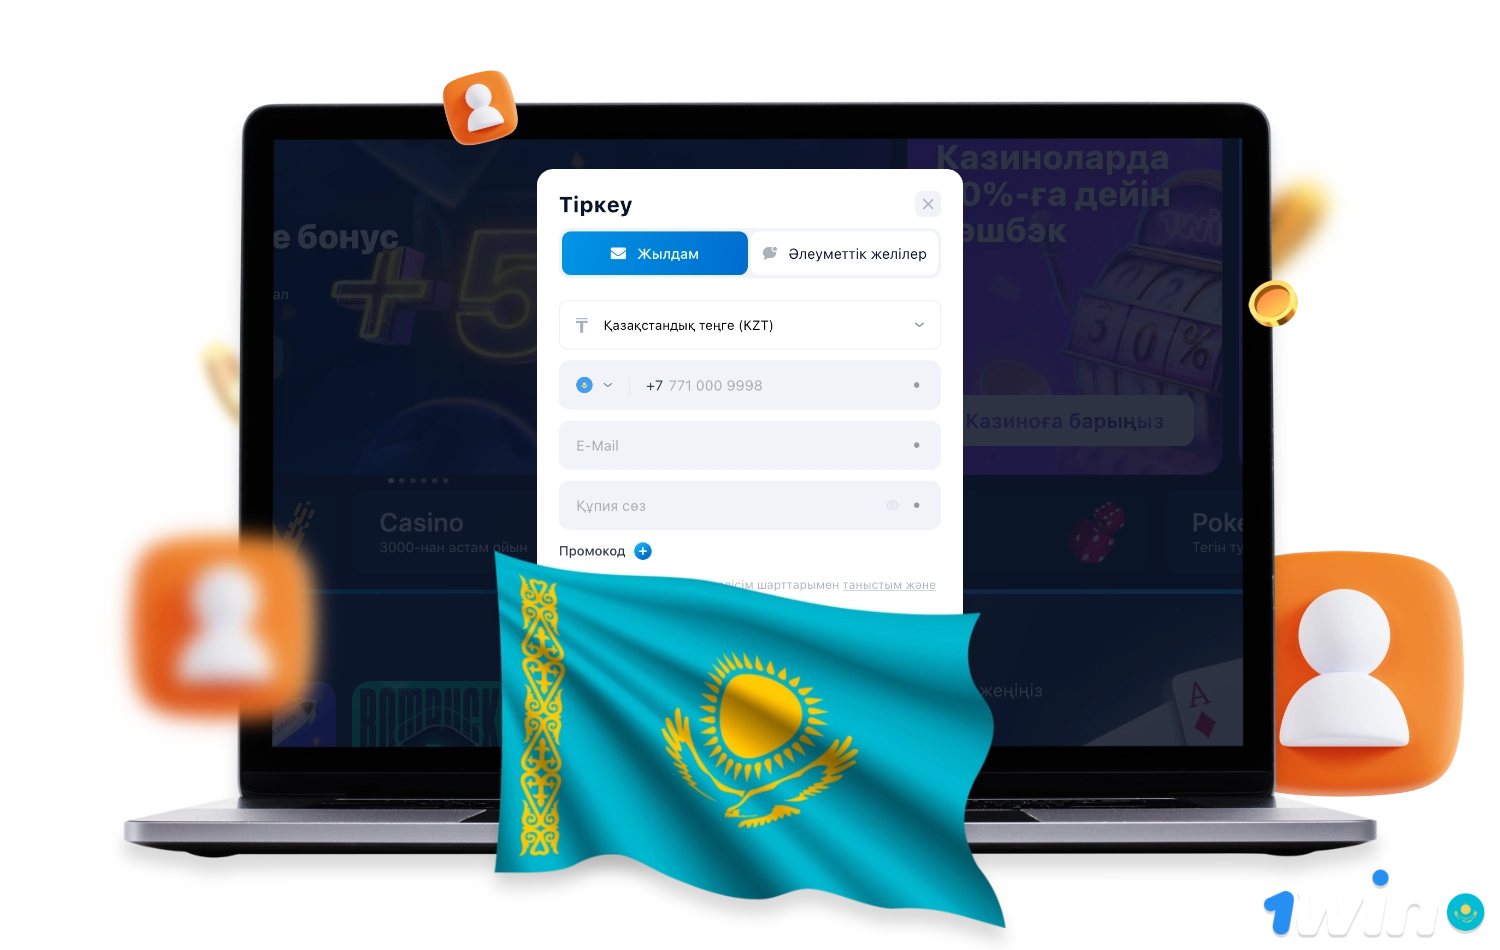 Зарегистрируйтесь на сайте 1win в Казахстане, чтобы получить доступ ко всем функциям платформы